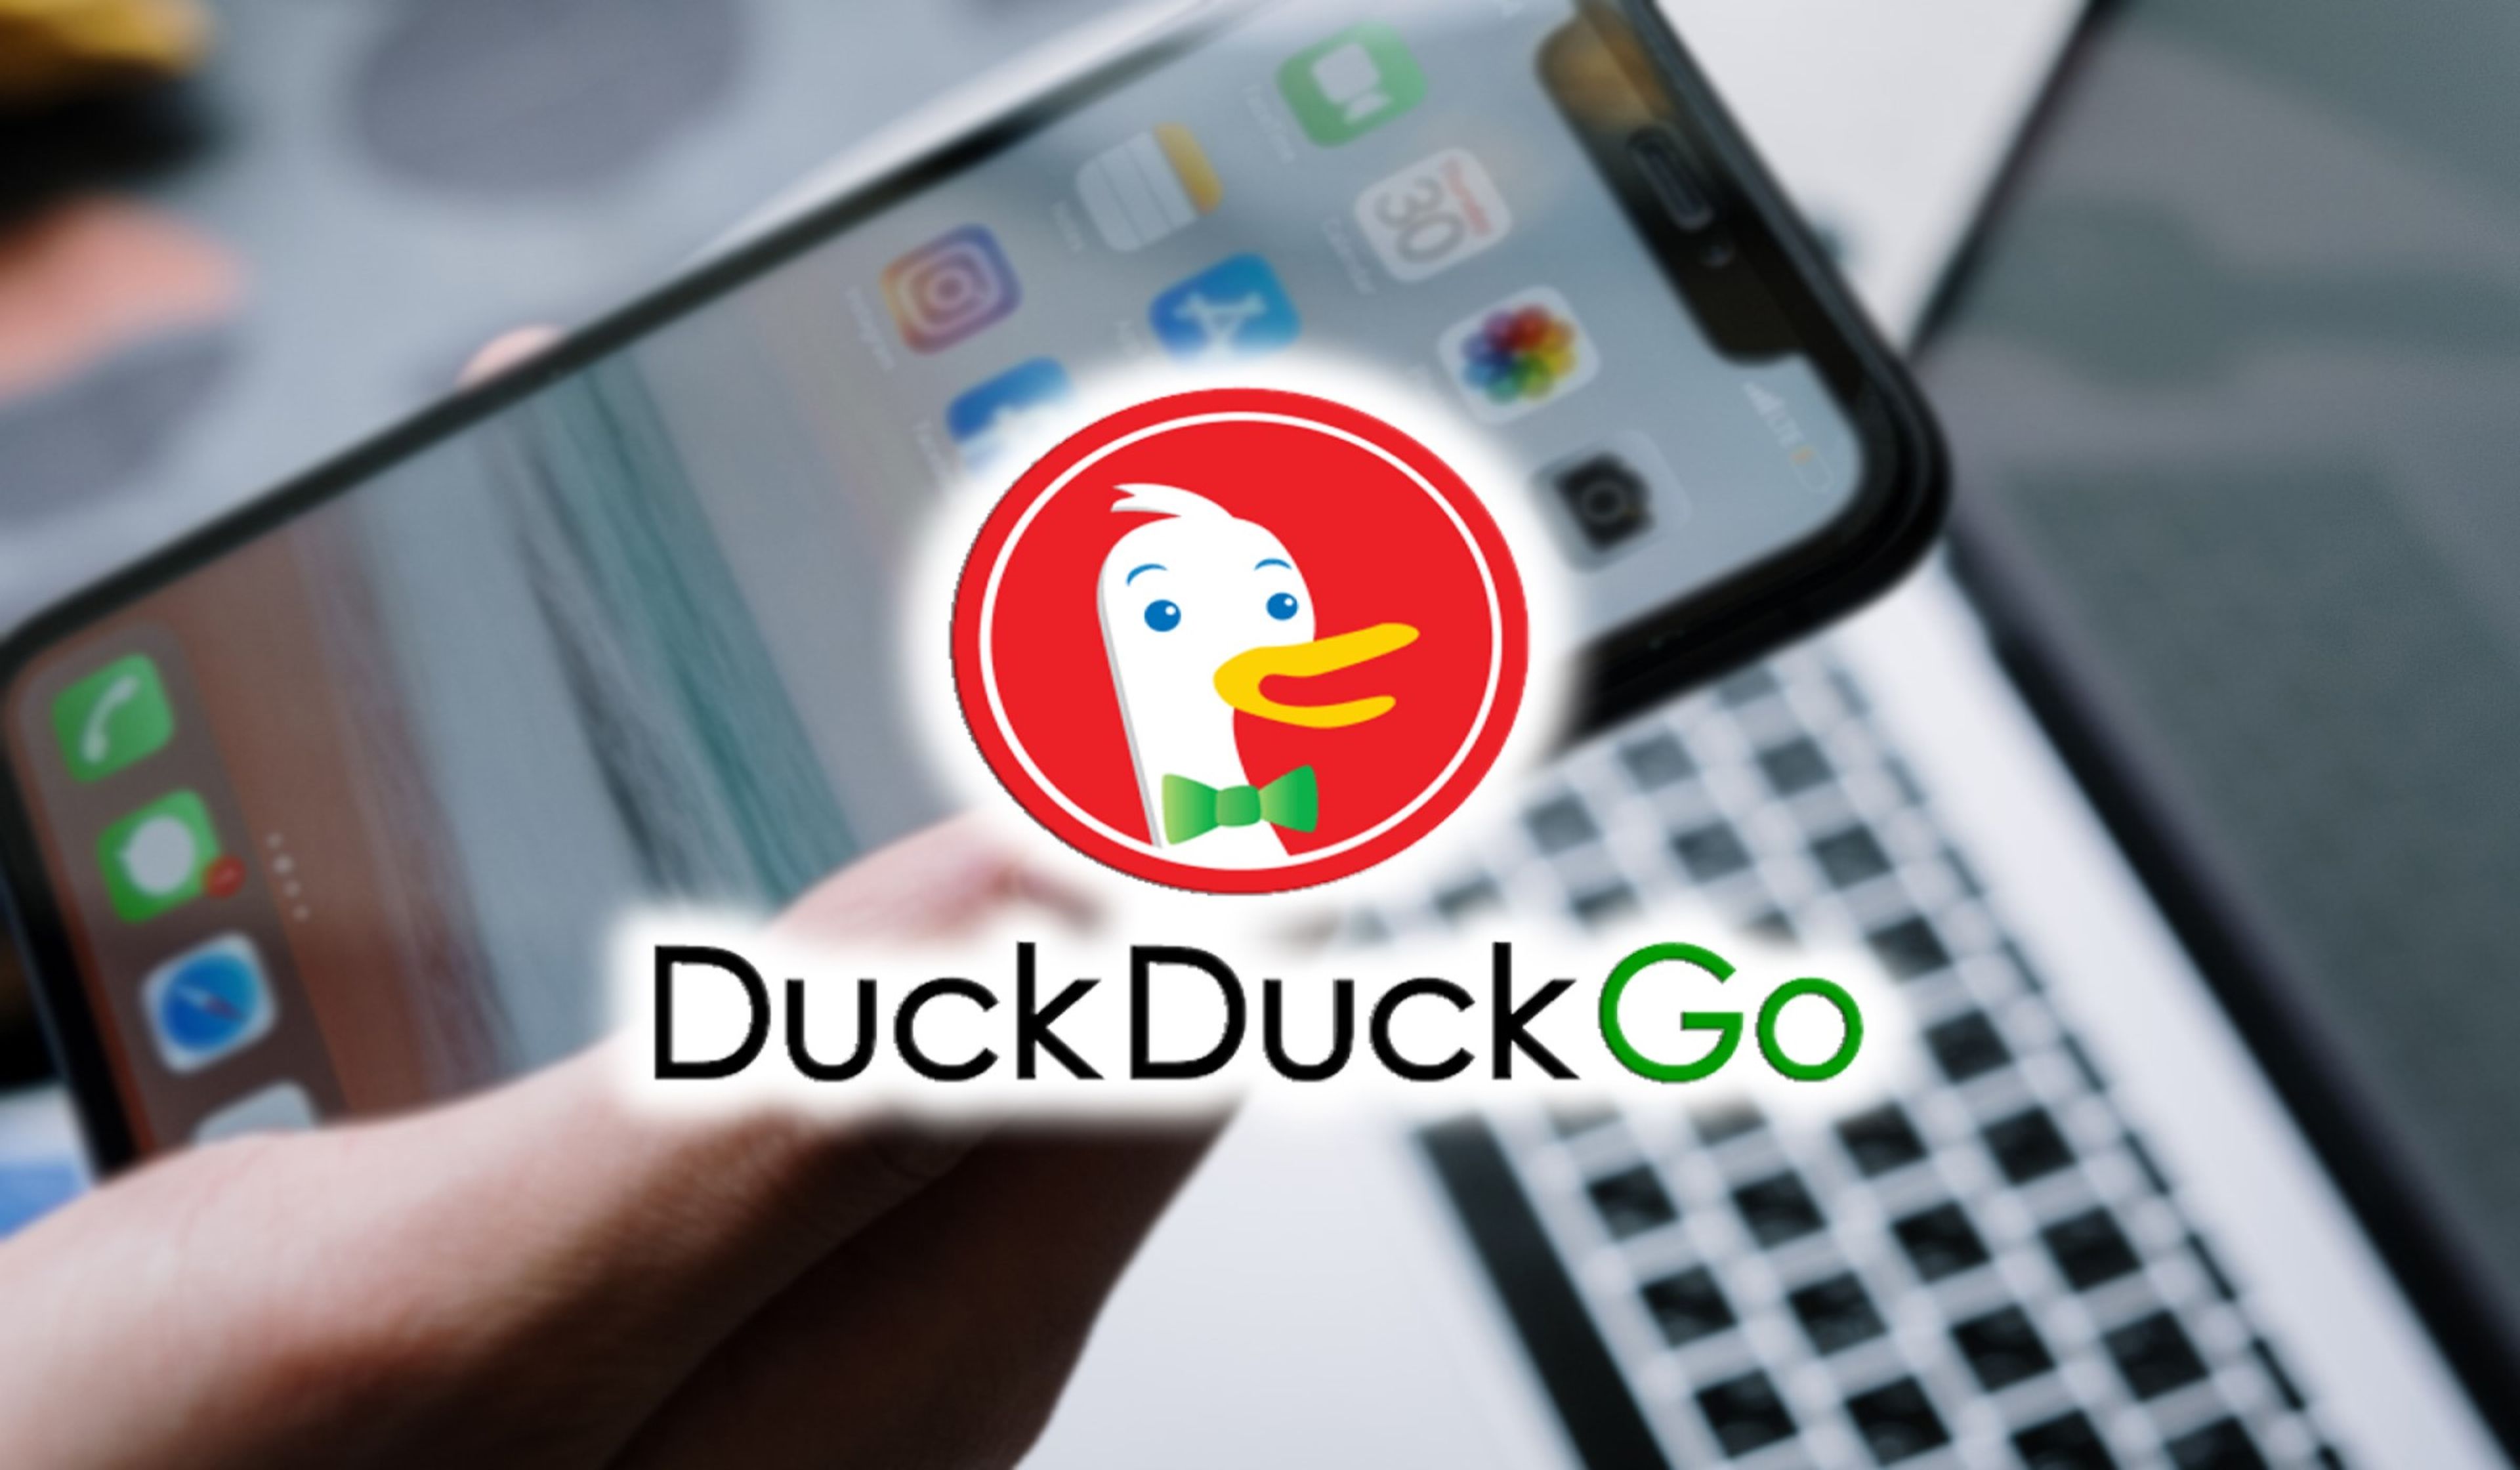 ¡Tiembla Google! DuckDuckGo le pisa los talones a Google Chrome con 100 millones de búsquedas diarias